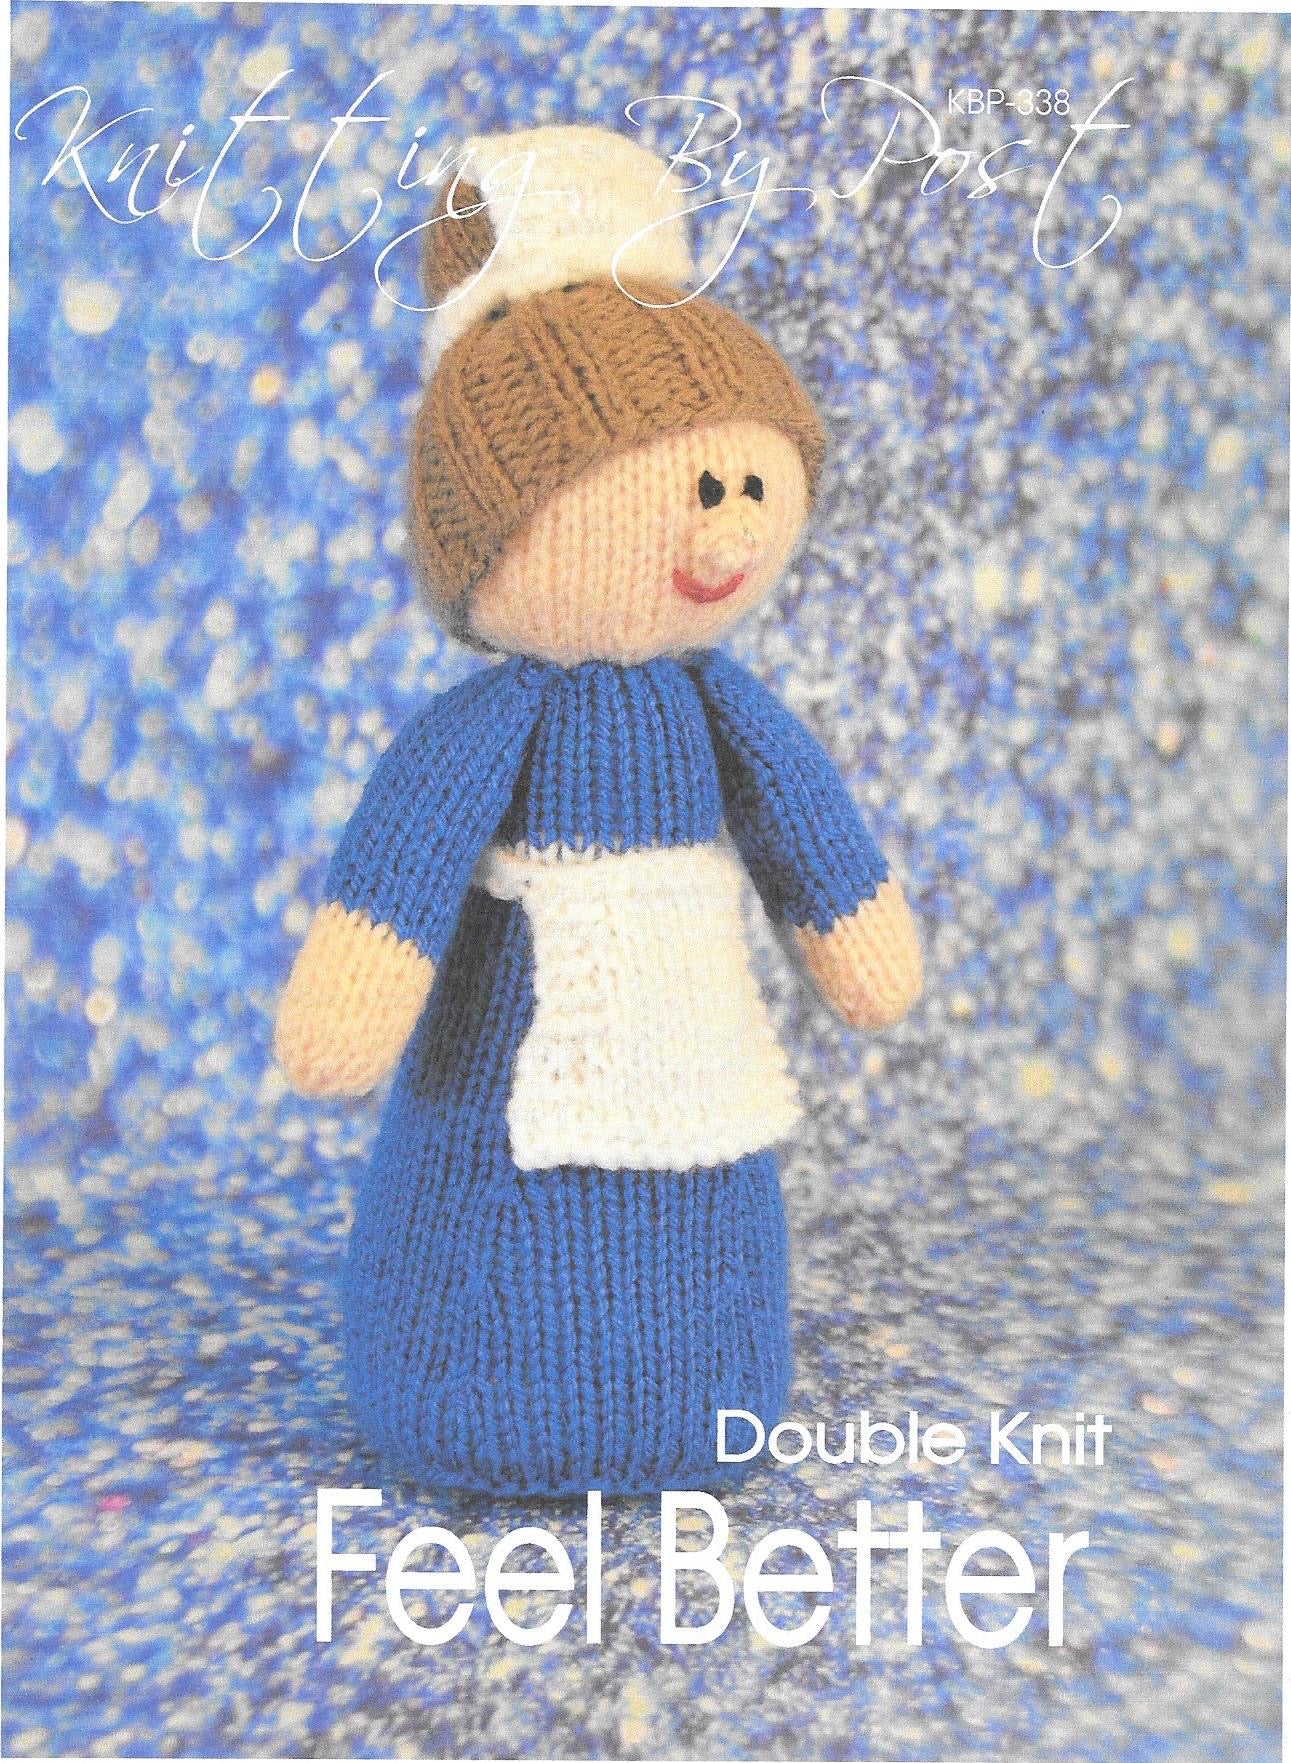 338 KBP338 Feeling Better toy in dk knitting pattern